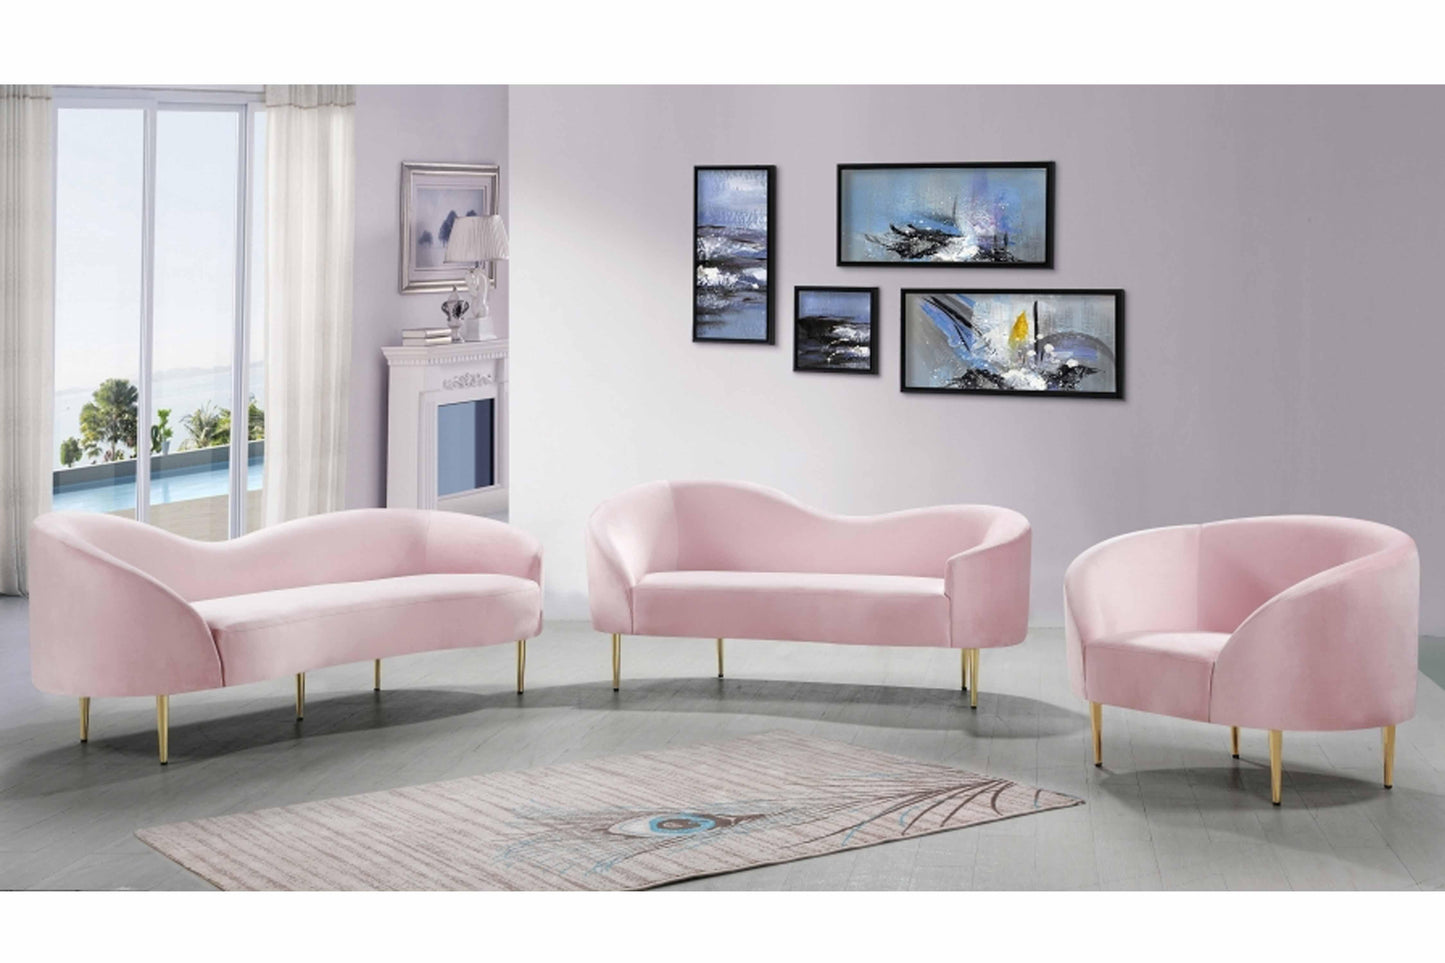 Ritz Velvet 3 pcs SKU: 659-S3 - Venini Furniture 